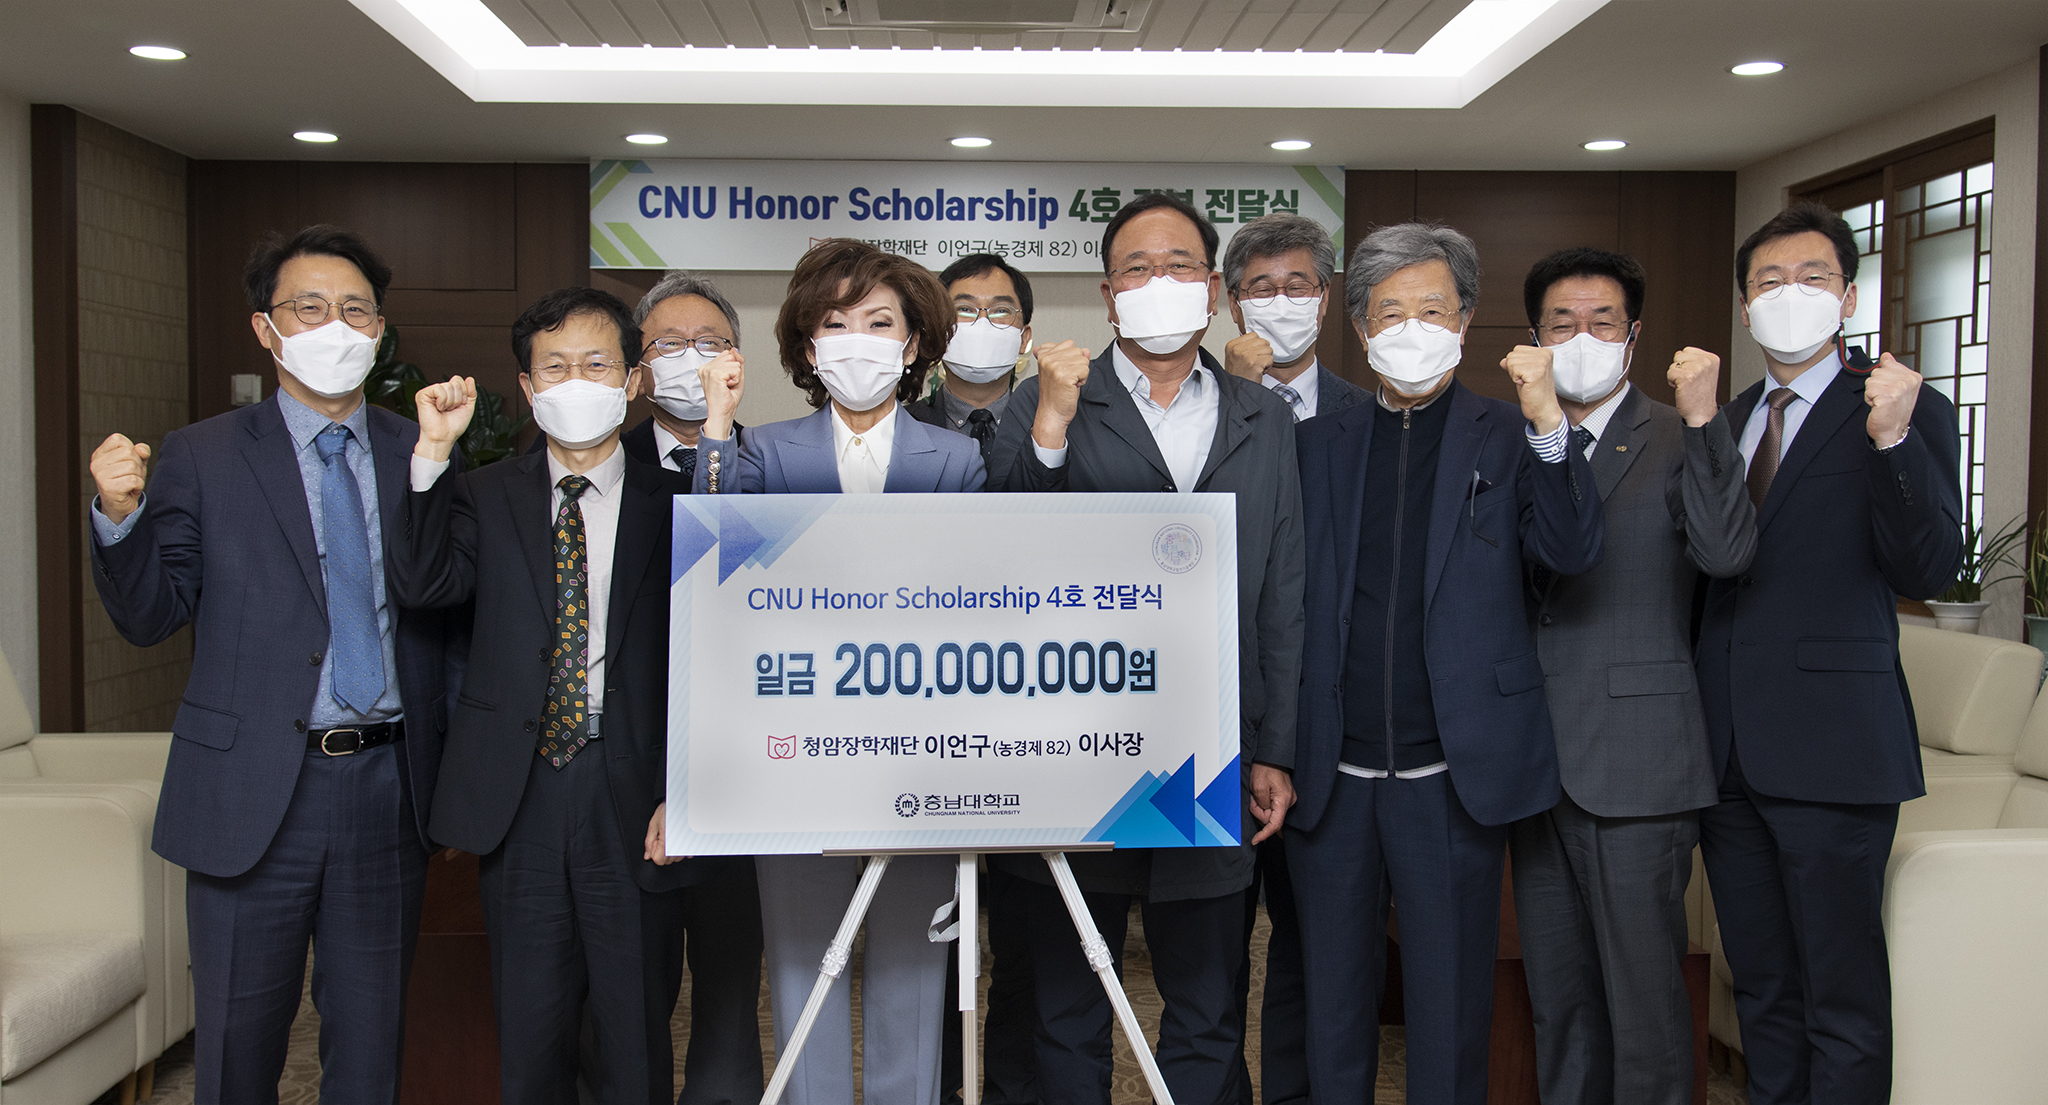 청암장학재단 이언구 이사장, ‘CNU Honor Scholarship’ 장학기금 2억원 기부 사진